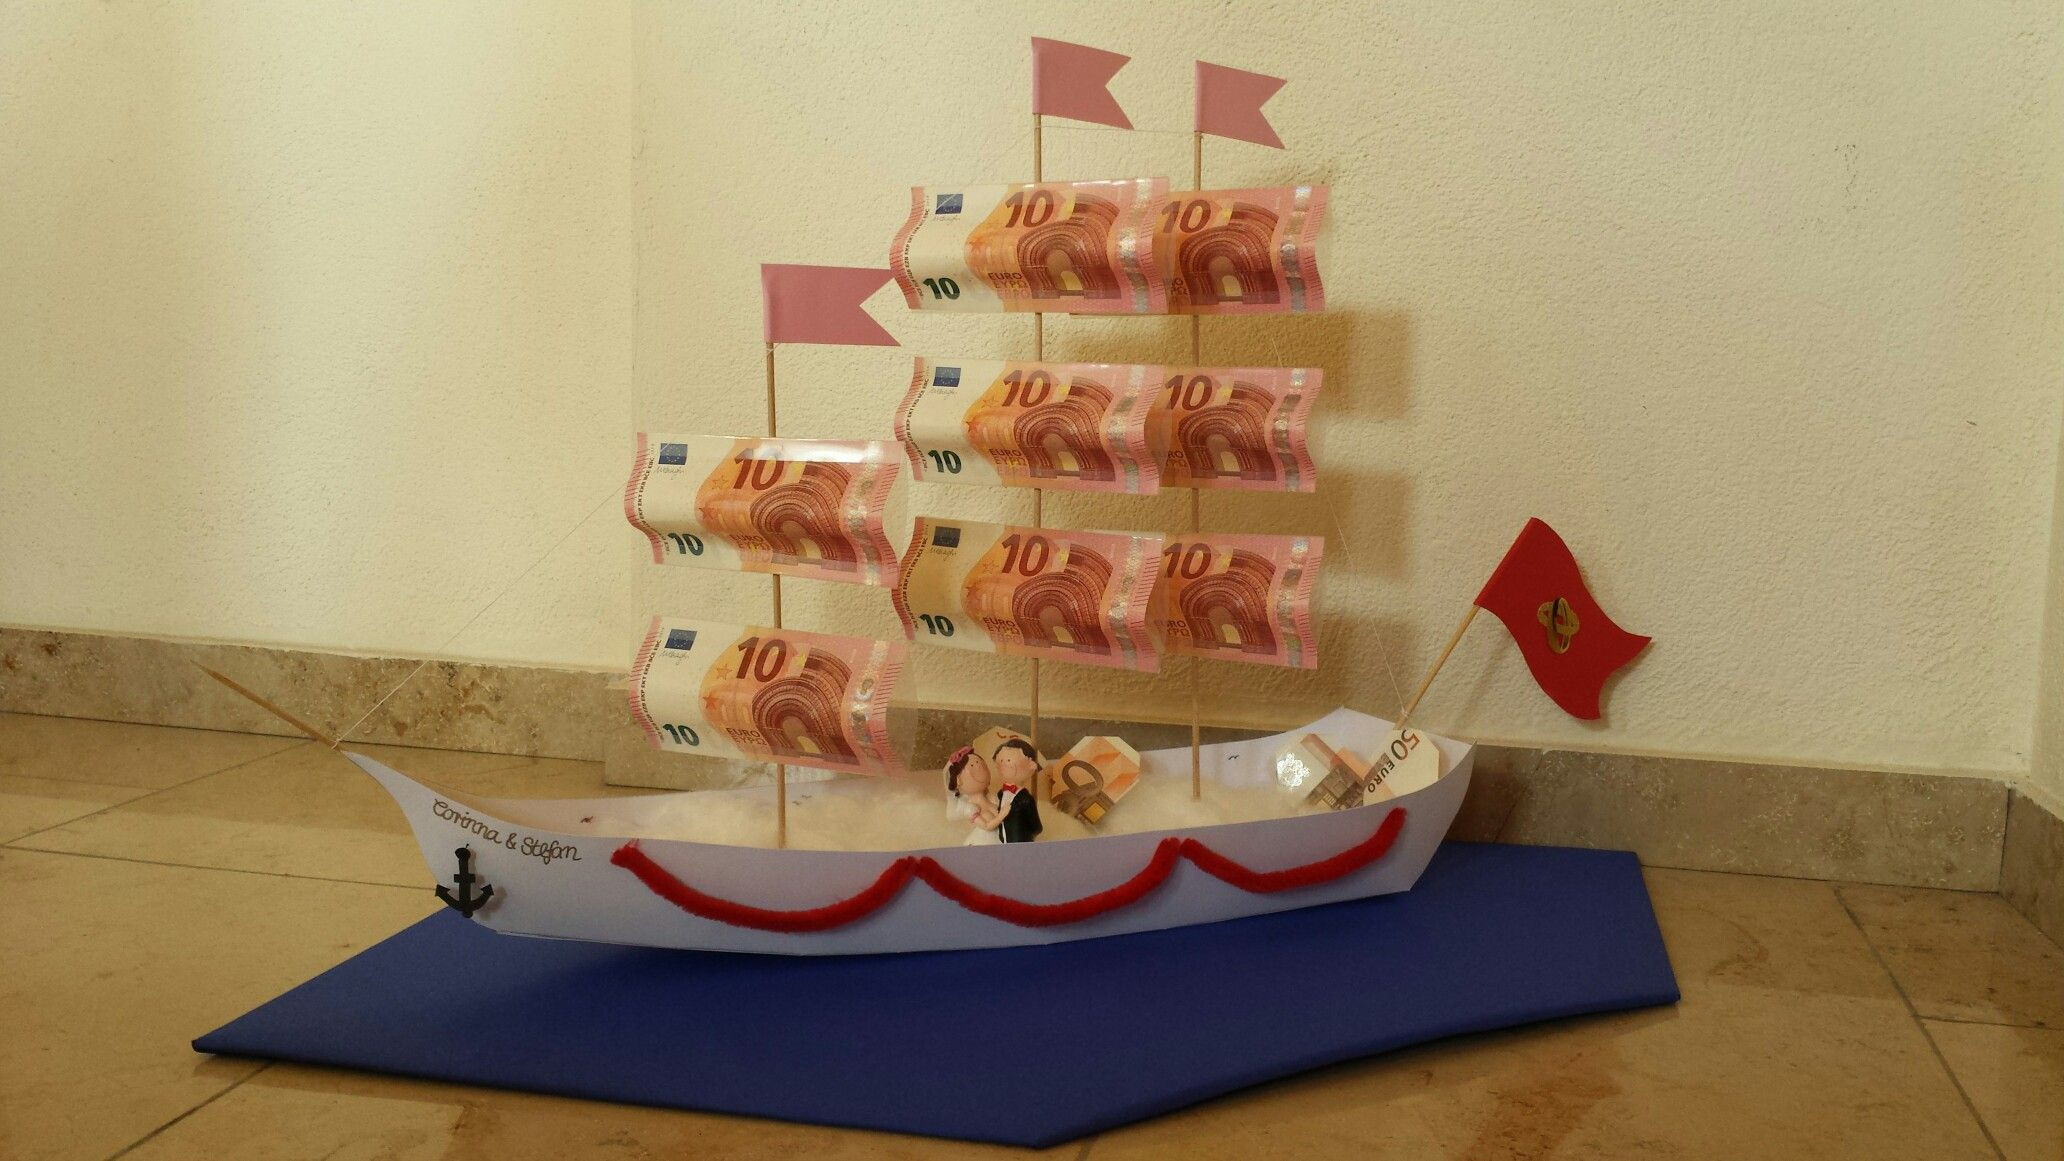 Geldgeschenk Hochzeit Pinterest
 DIY Geldgeschenk zur Hochzeit Segelschiff